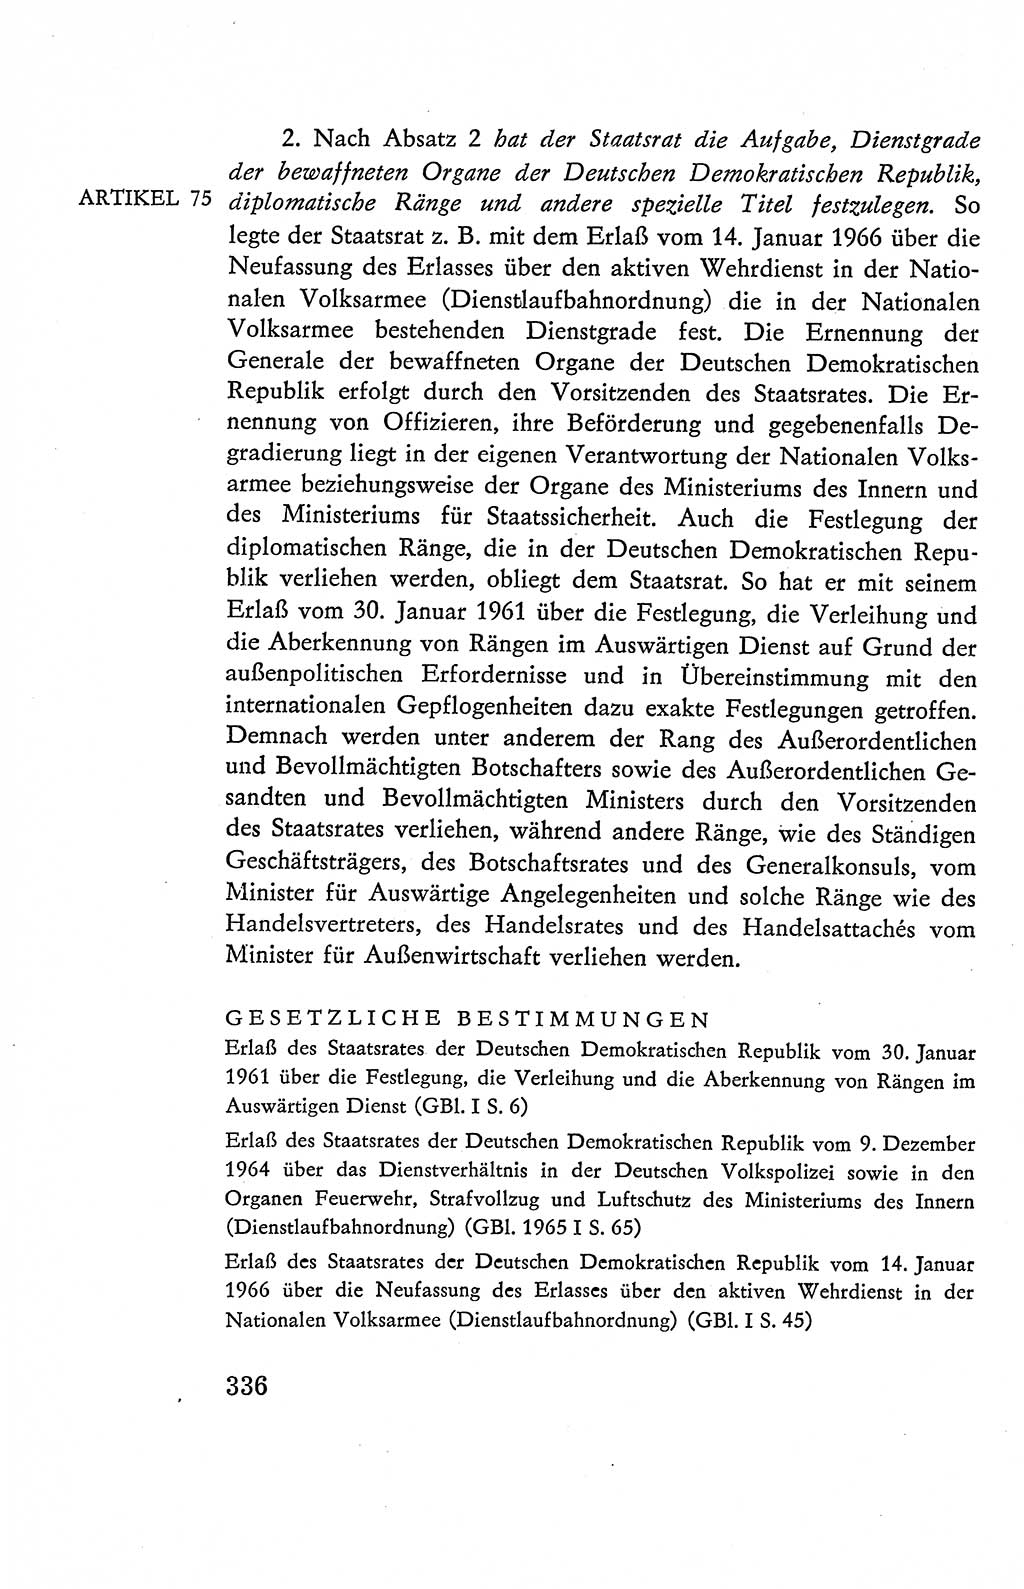 Verfassung der Deutschen Demokratischen Republik (DDR), Dokumente, Kommentar 1969, Band 2, Seite 336 (Verf. DDR Dok. Komm. 1969, Bd. 2, S. 336)